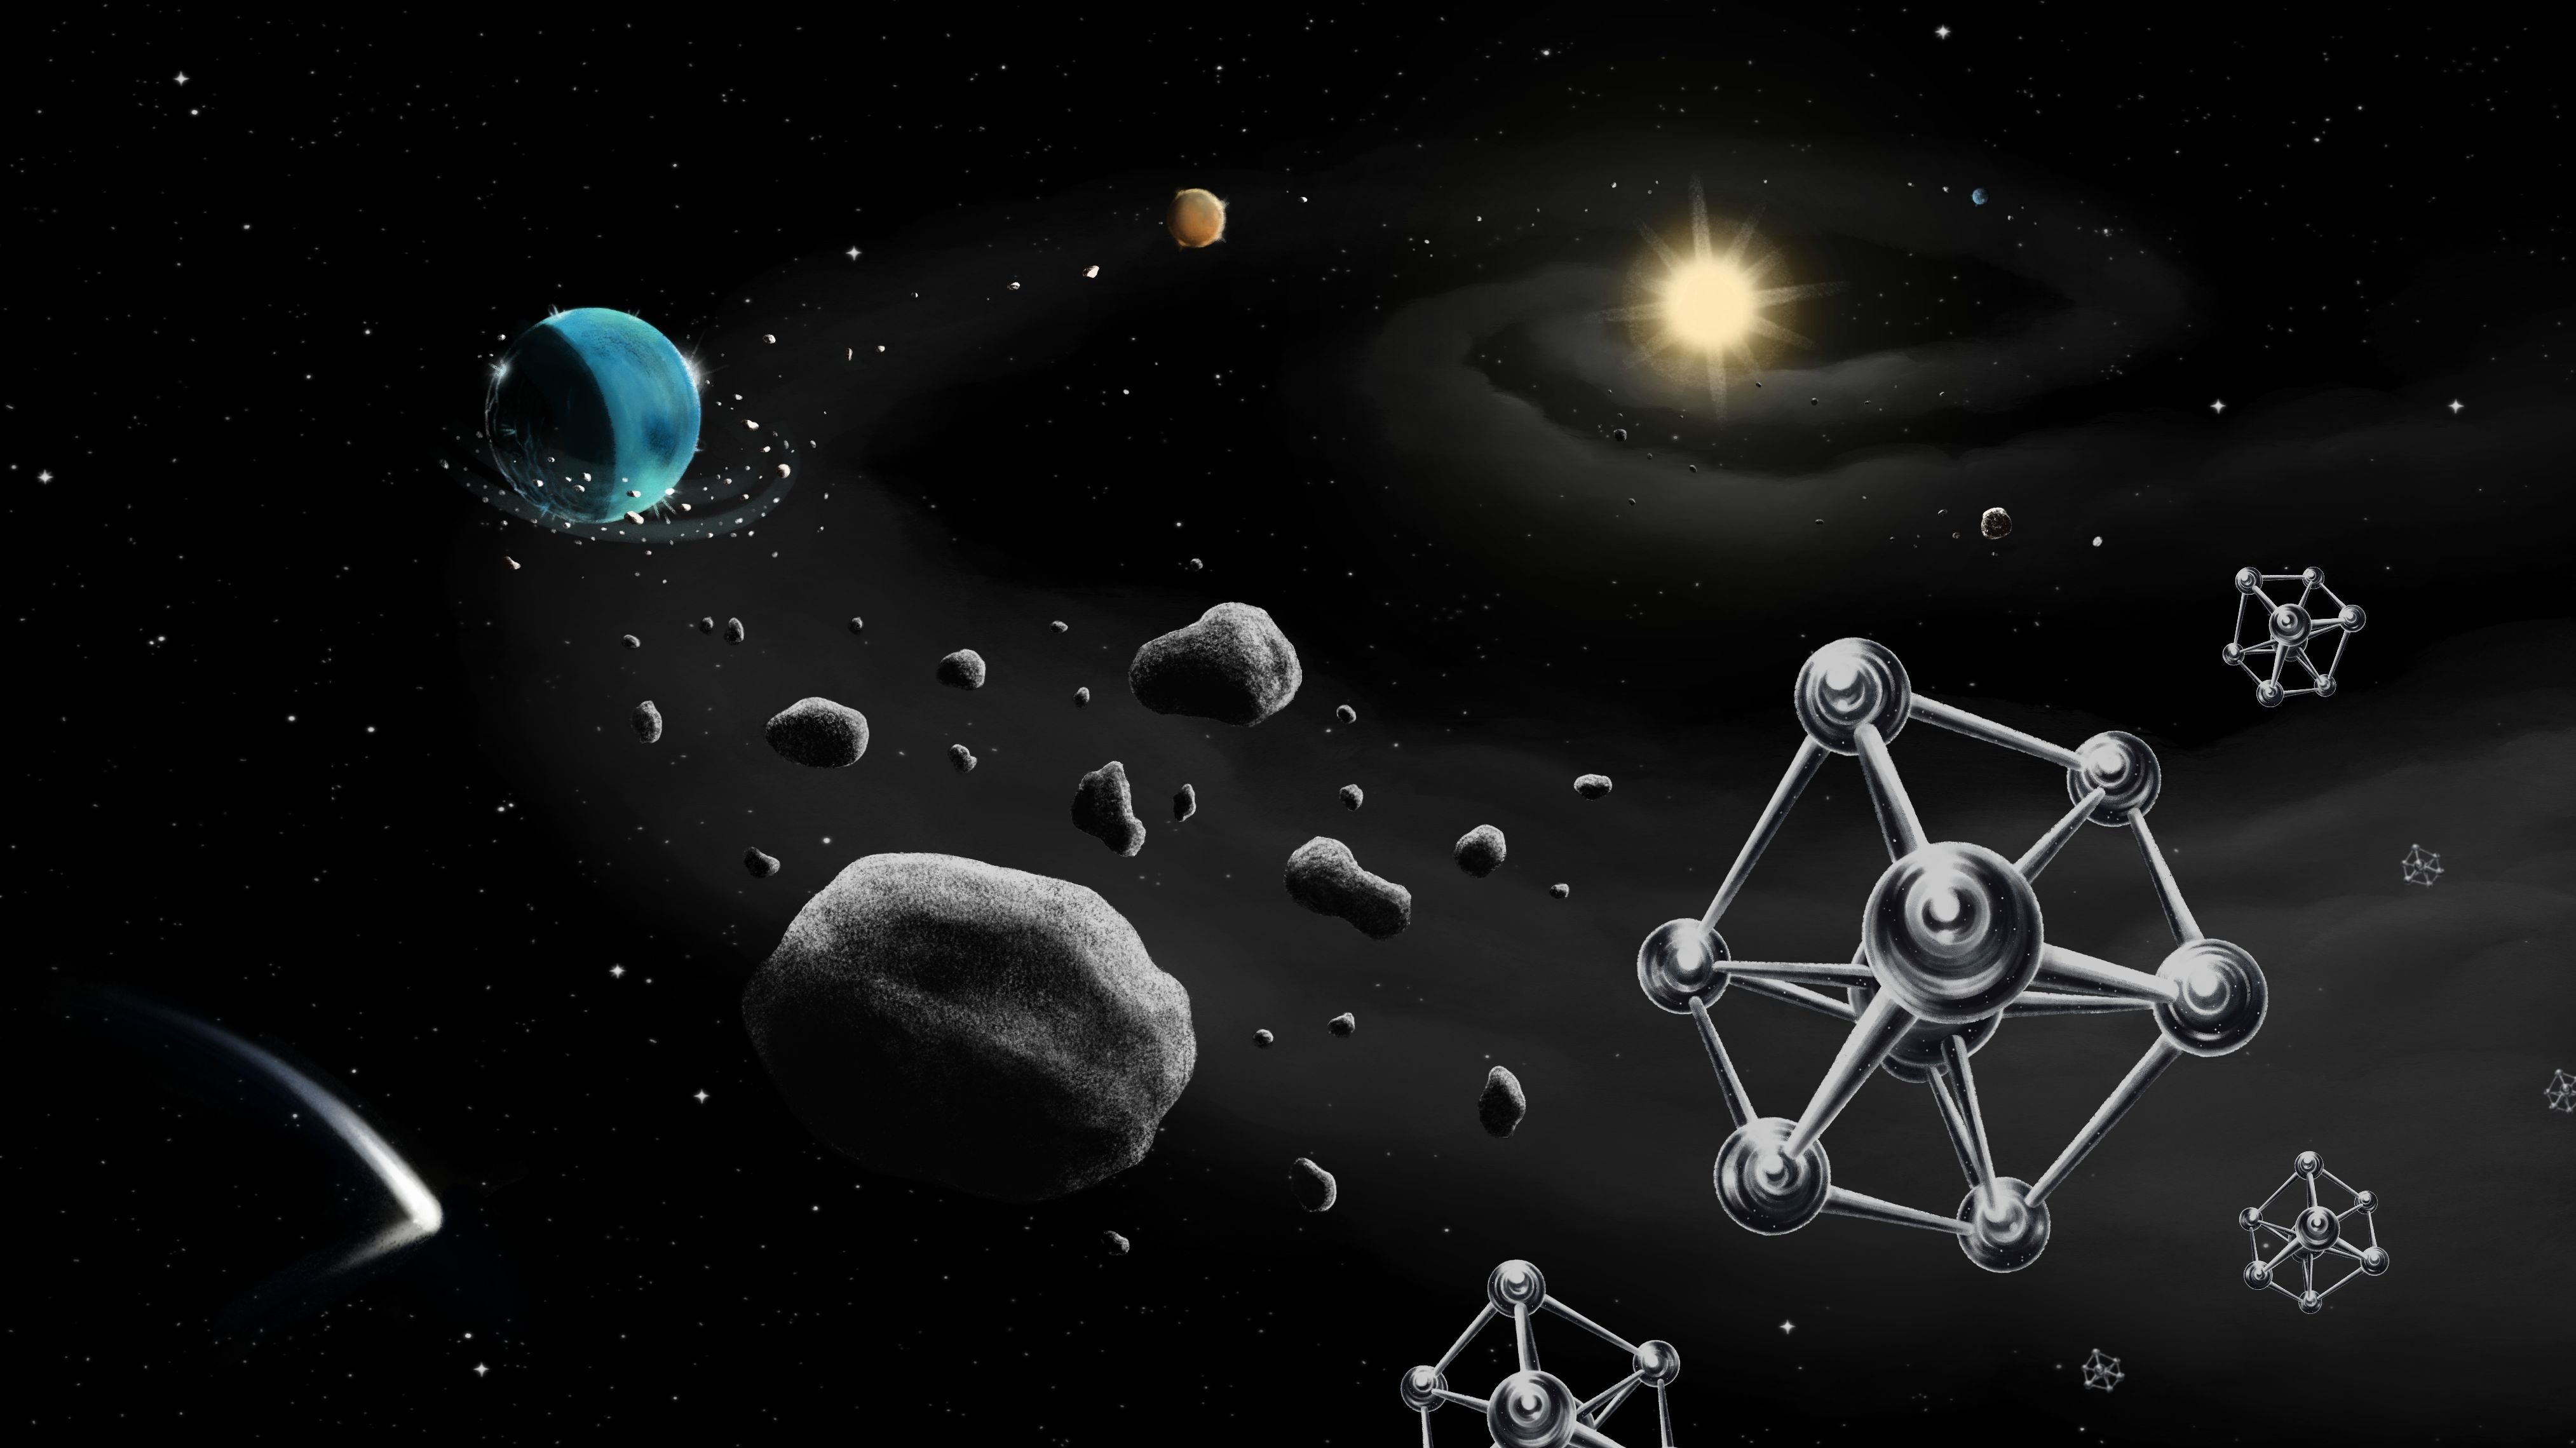 Ilustração da formação de planetas à volta de uma estrela semelhante ao Sol, com rochas e moléculas de ferro, os “tijolos” para a formação dos planetas, em grande plano